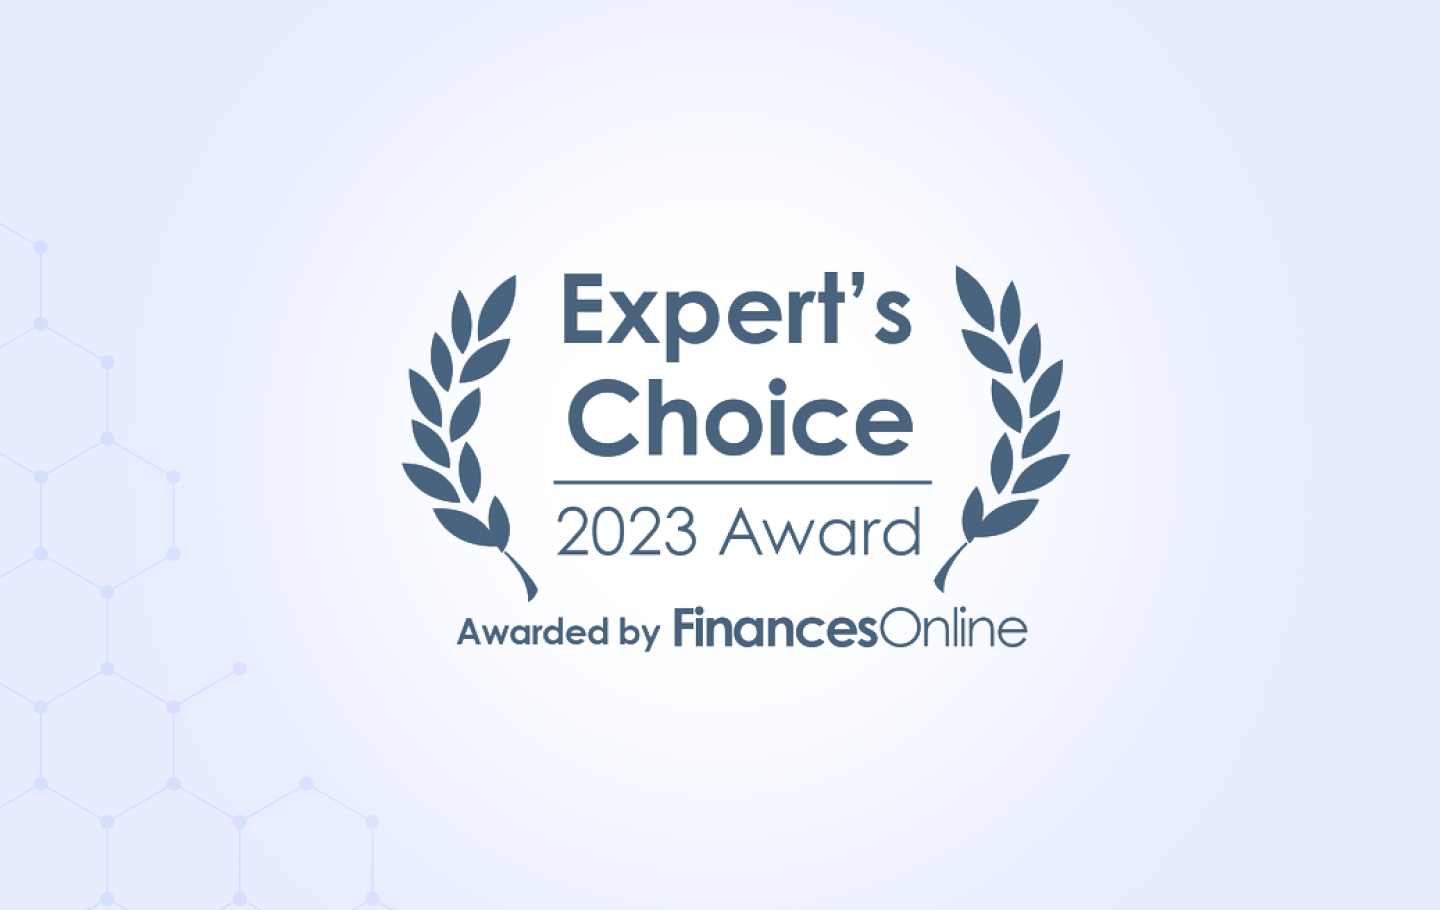 Finances Online Awards EasyDMARC with 